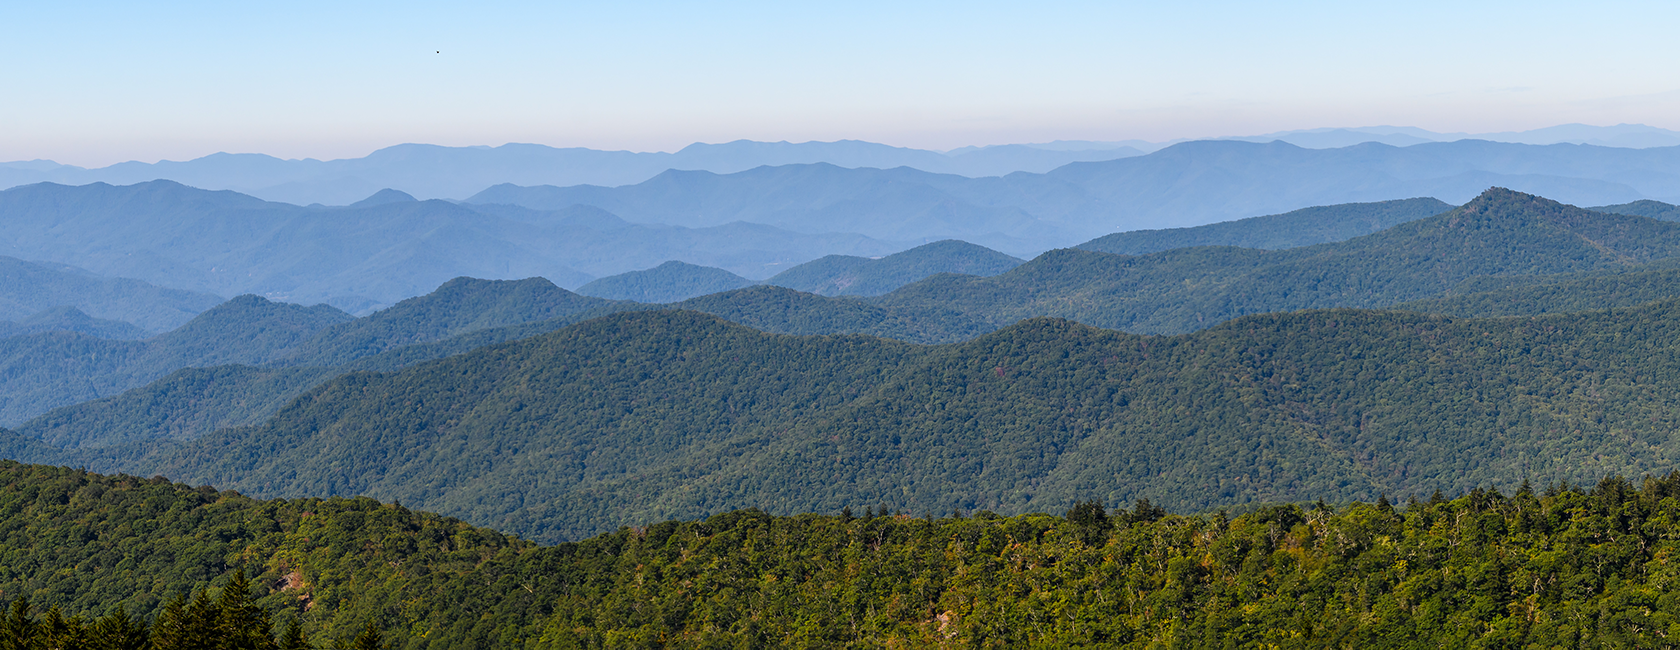 blue ridge mountains landscape photo